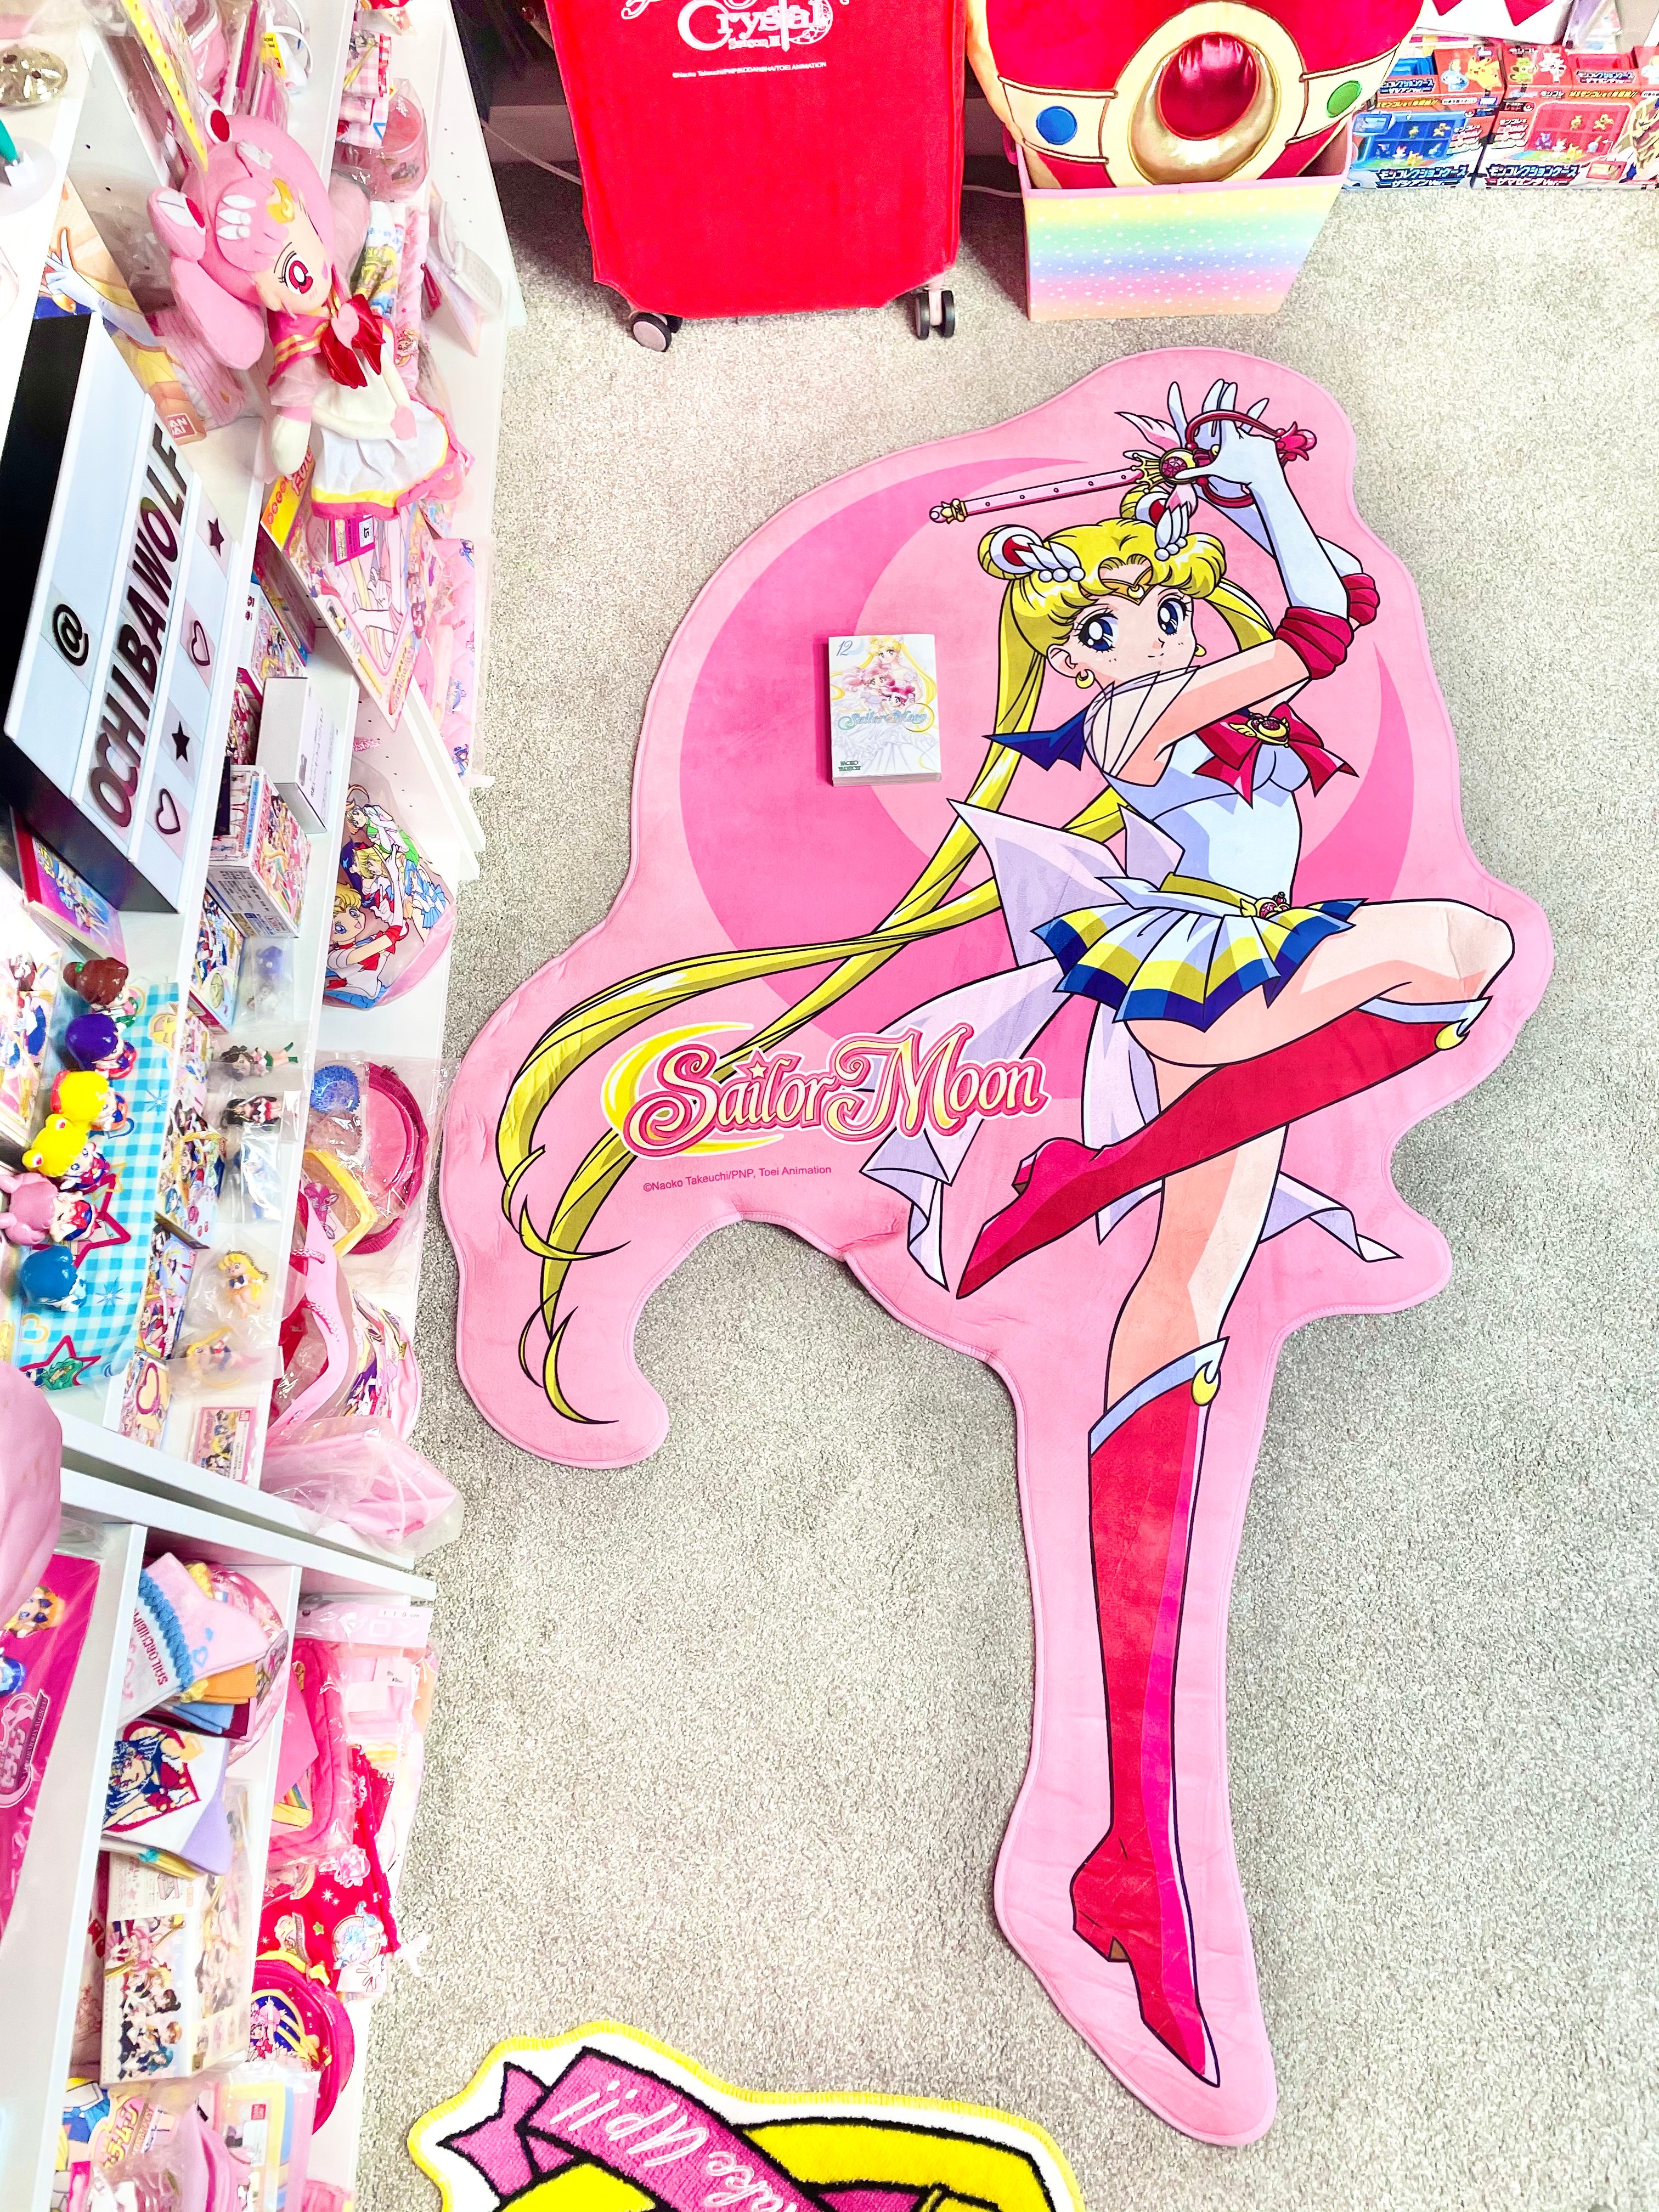 A Sailor Moon x O&B collaboration has just landed in Bangkok